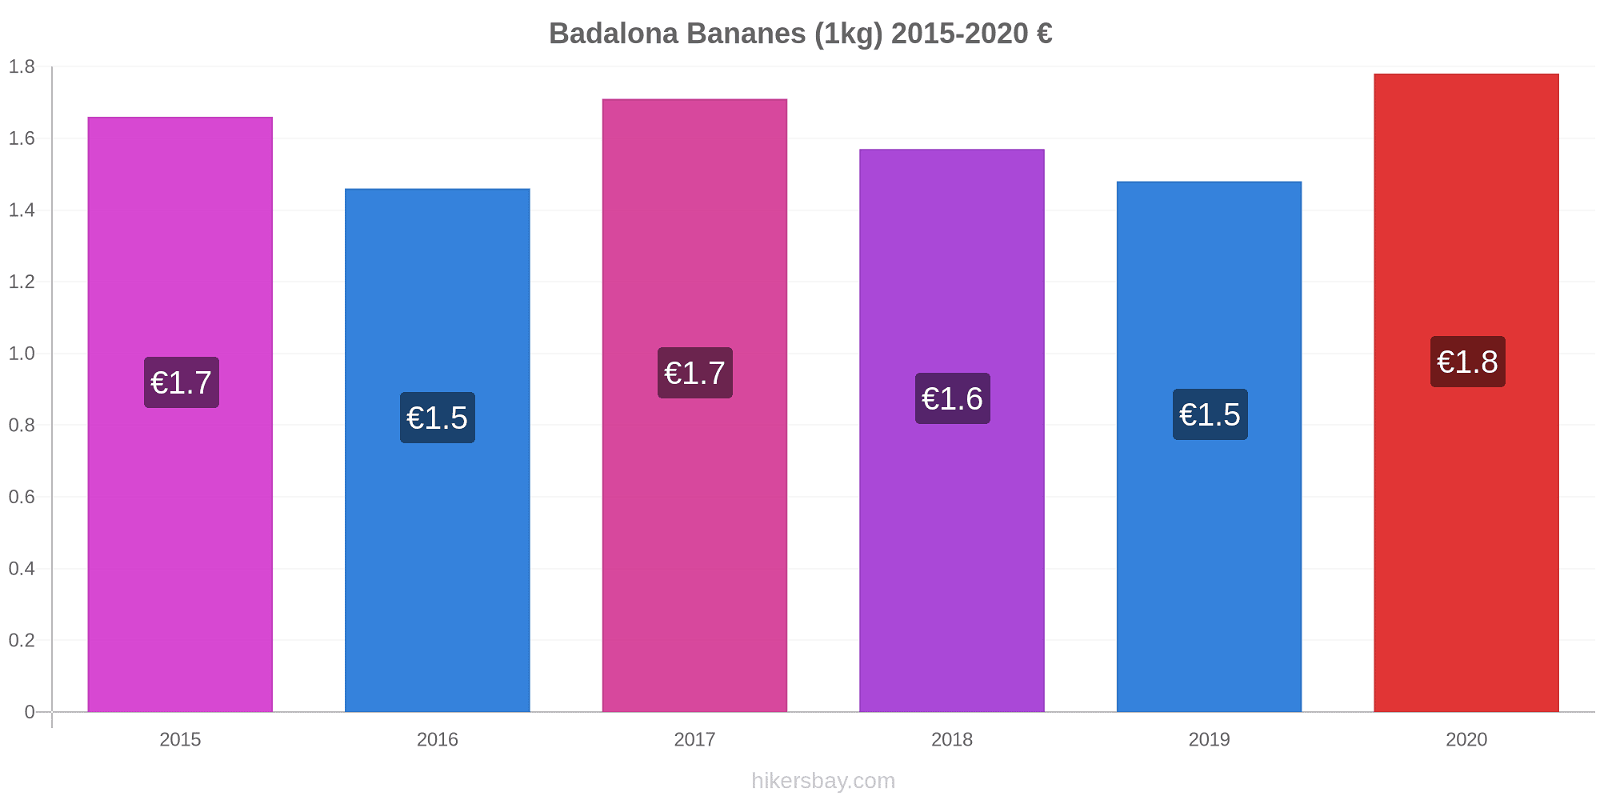 Badalona changements de prix Bananes (1kg) hikersbay.com